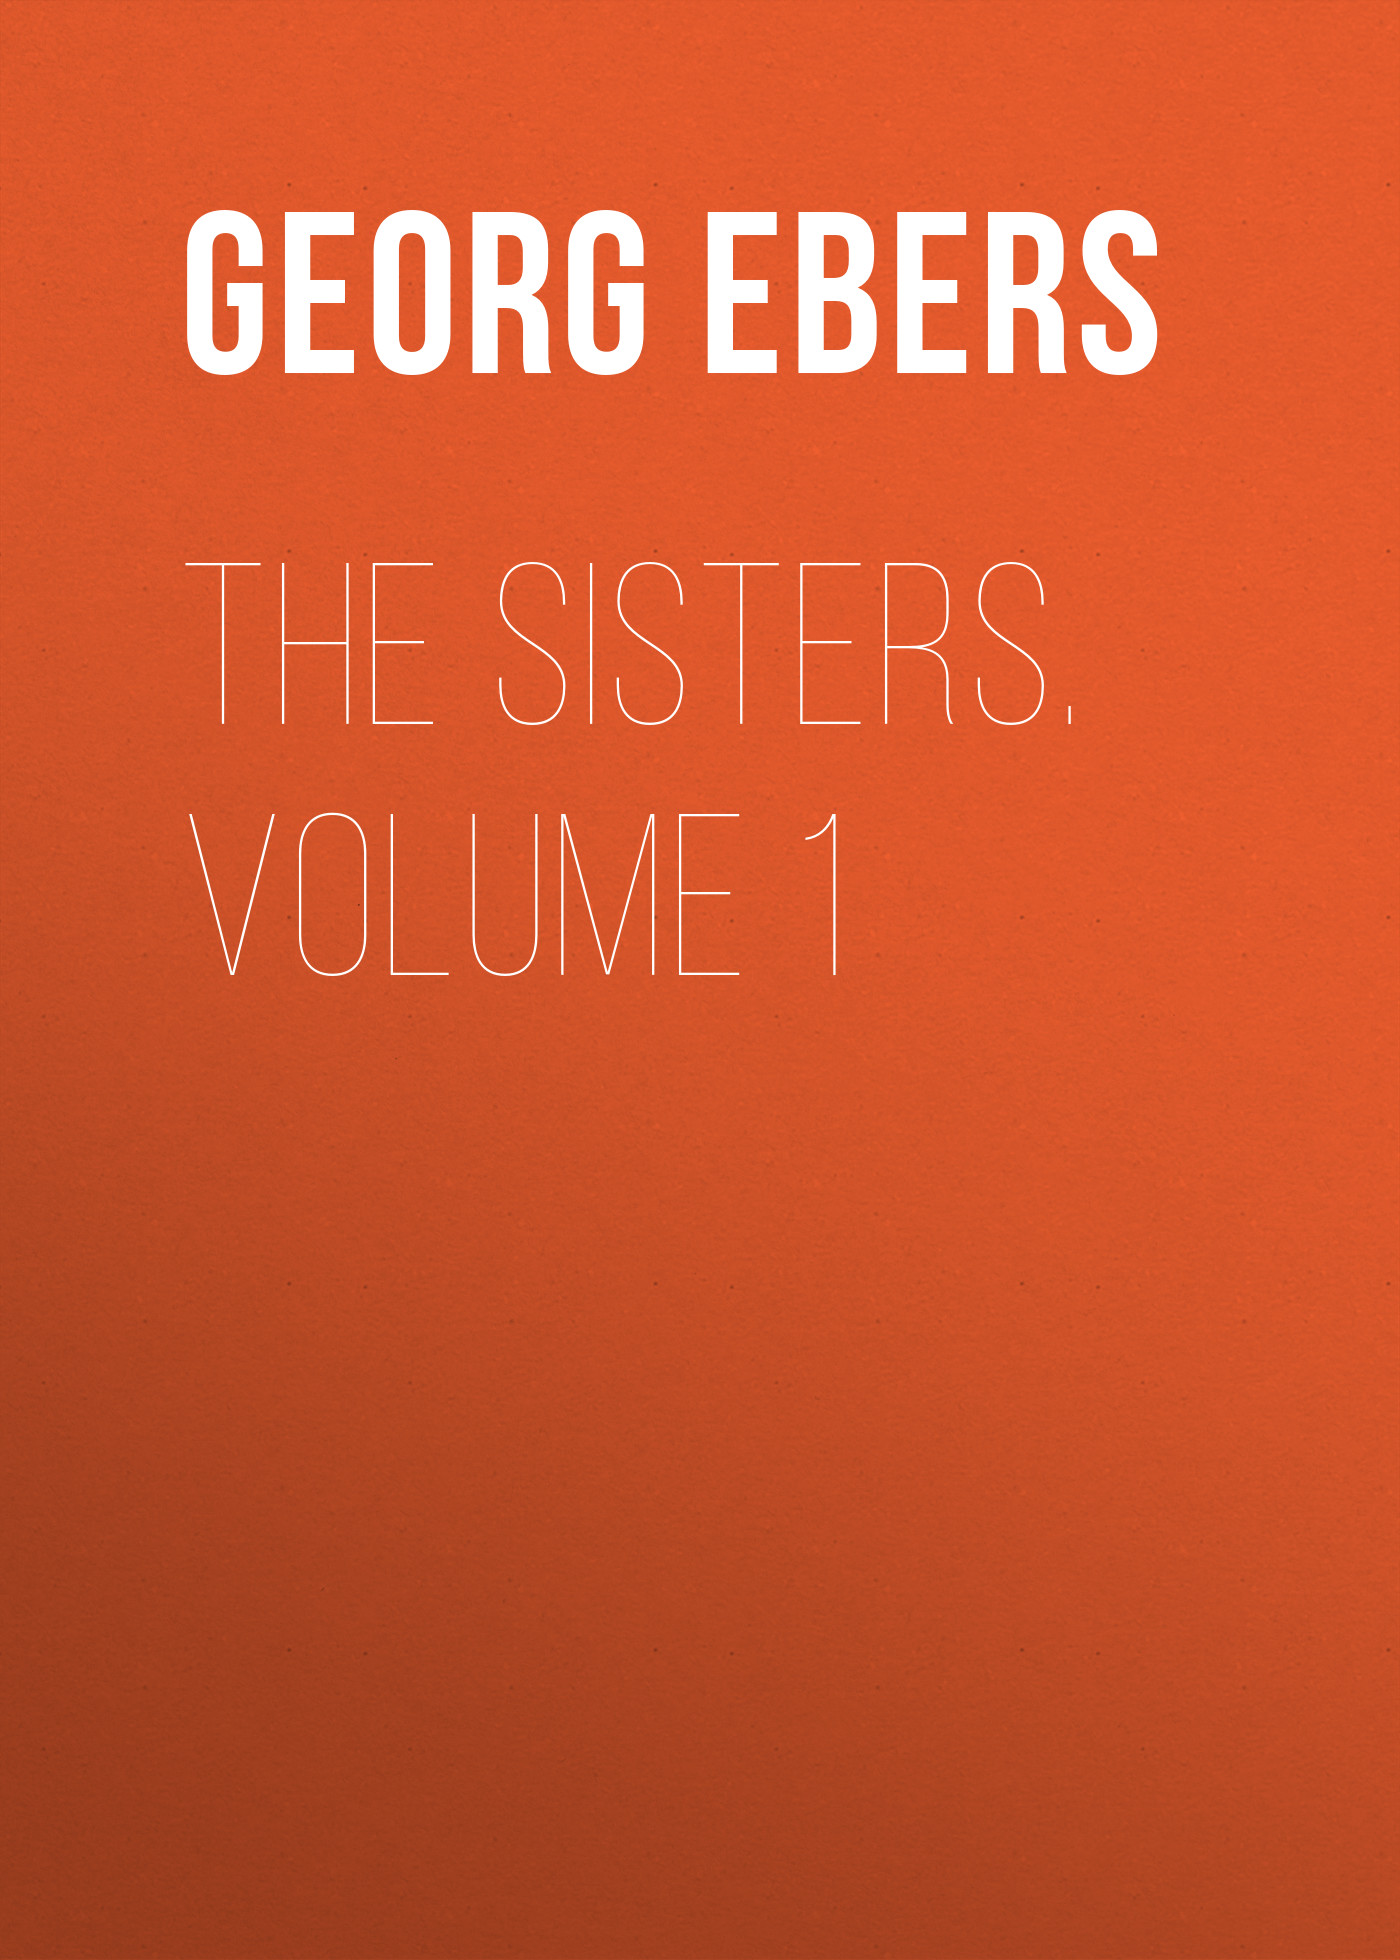 Книга The Sisters. Volume 1 из серии , созданная Georg Ebers, может относится к жанру Зарубежная классика, Литература 19 века, Зарубежная старинная литература. Стоимость электронной книги The Sisters. Volume 1 с идентификатором 42627331 составляет 0 руб.